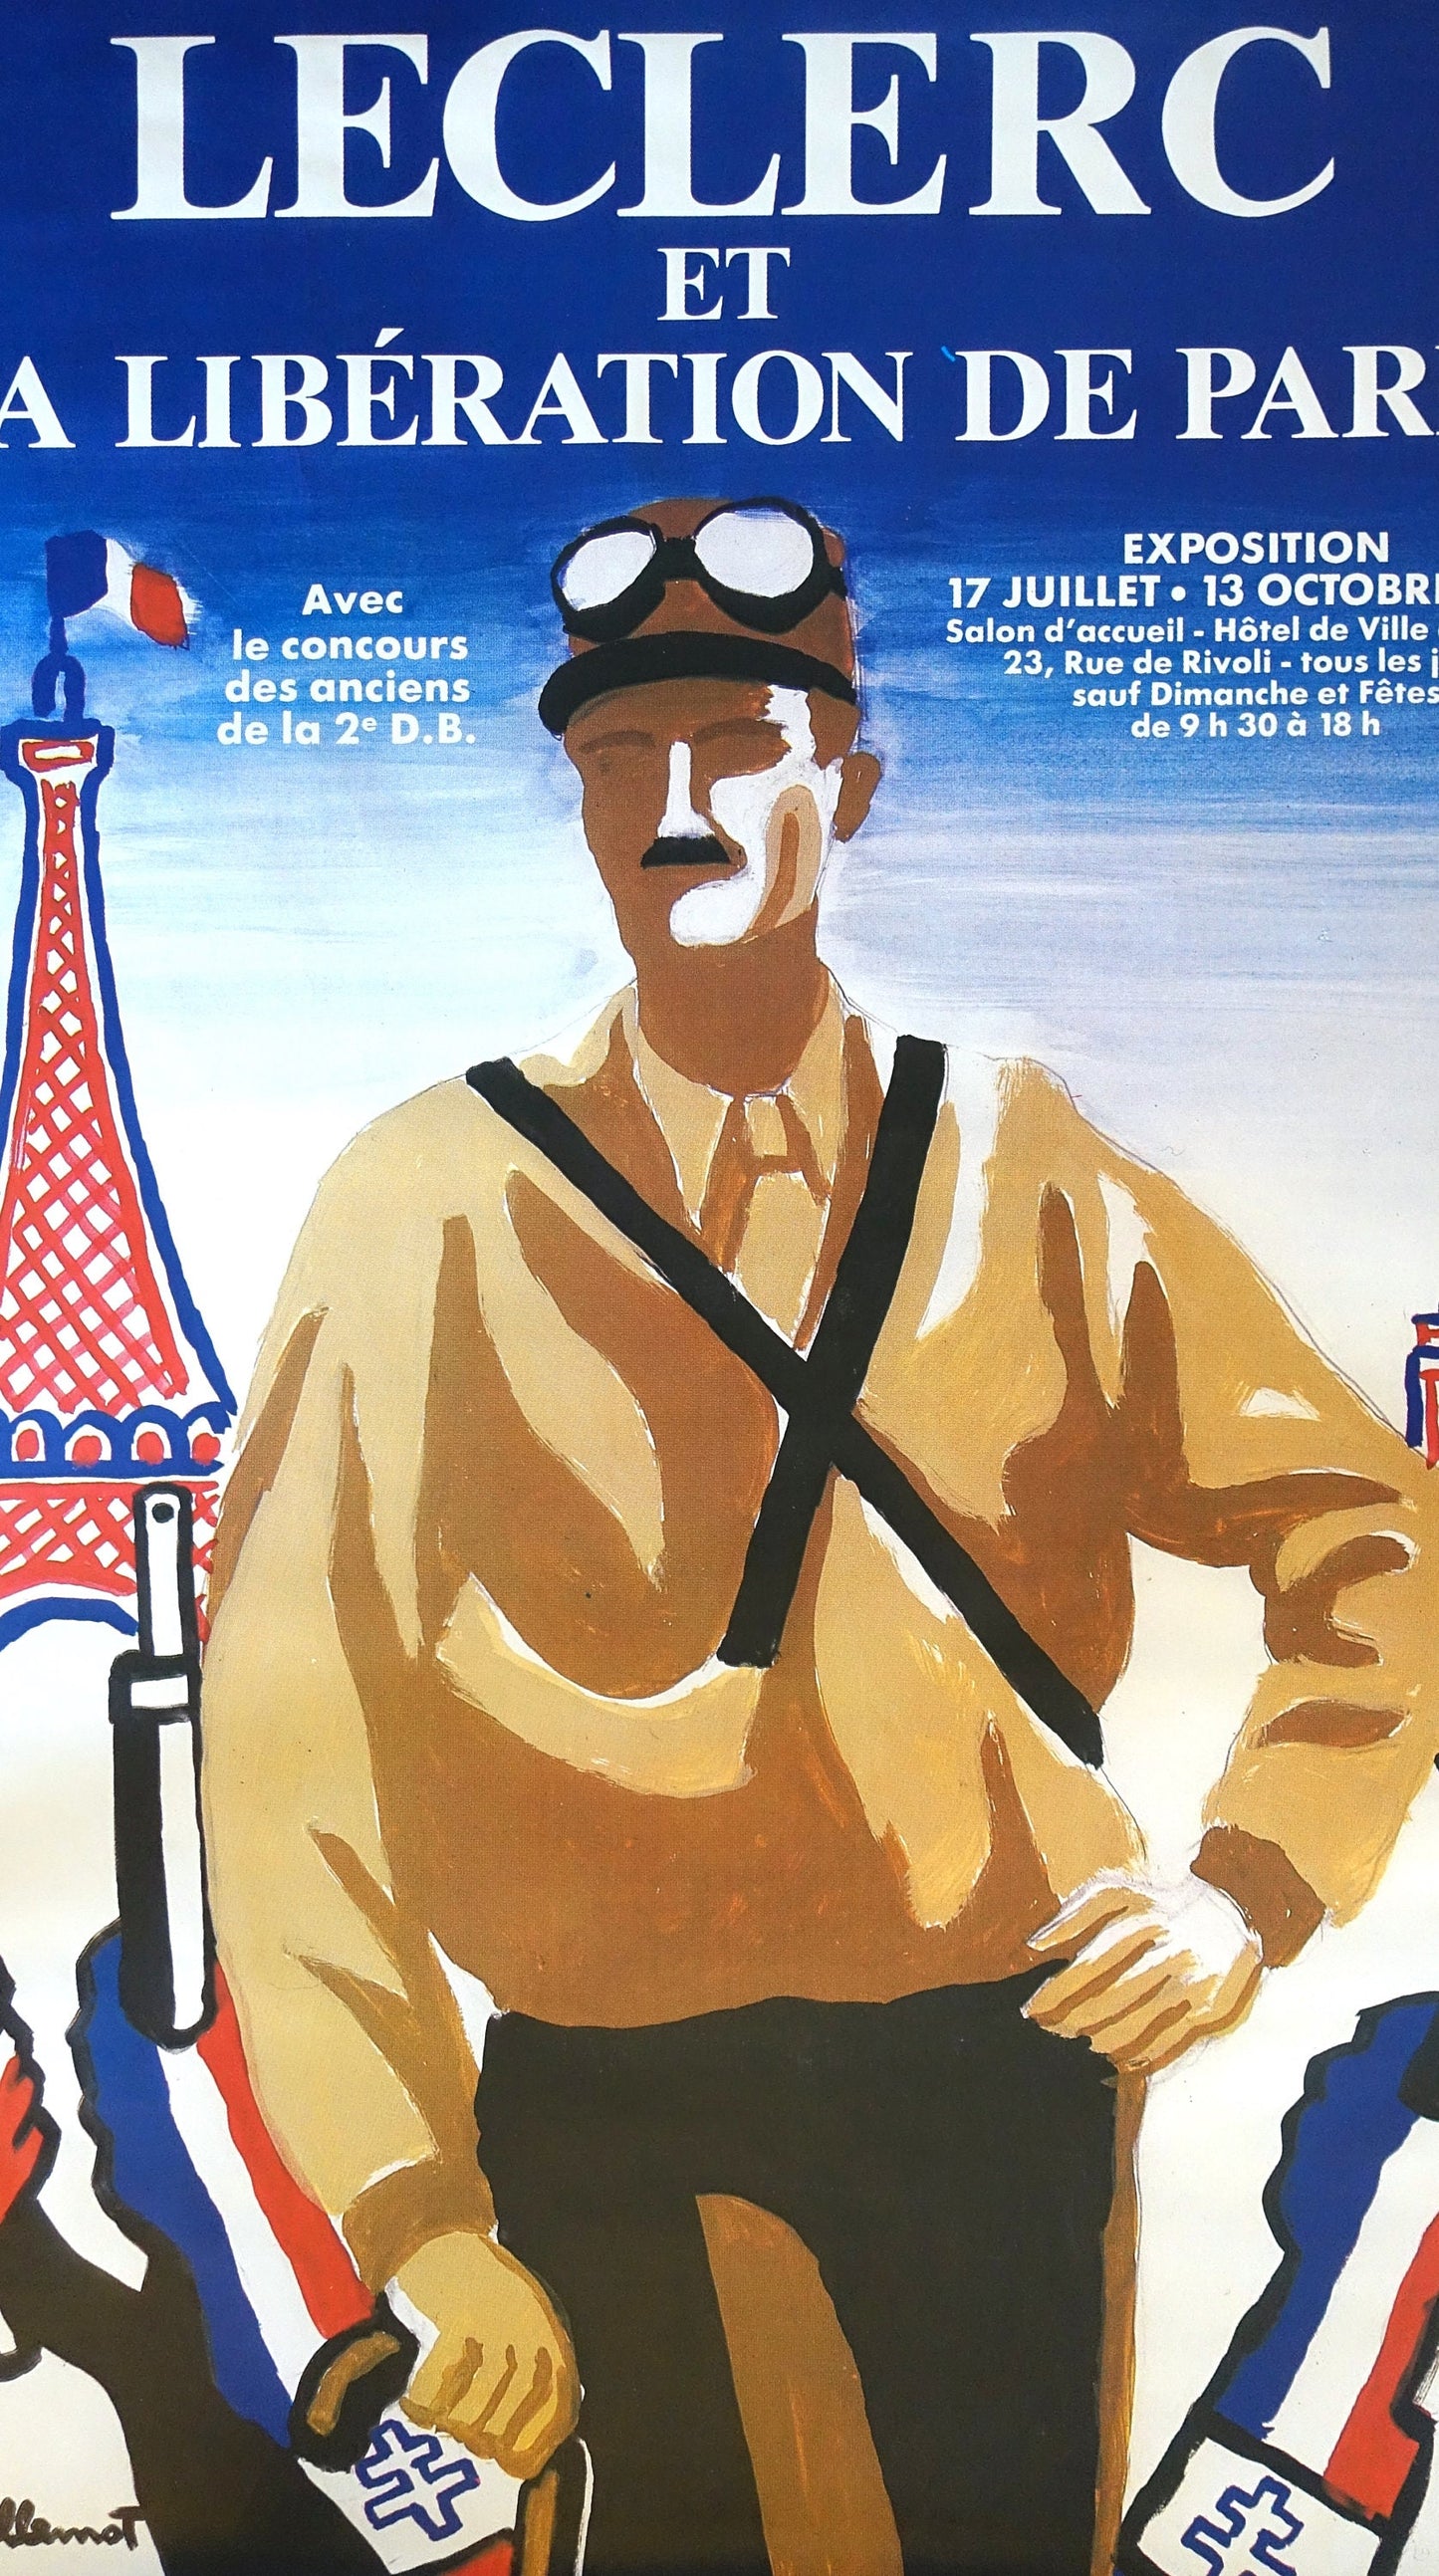 1984 Leclerc et La Liberation de Paris by Bernard Villemot - Original Vintage Poster